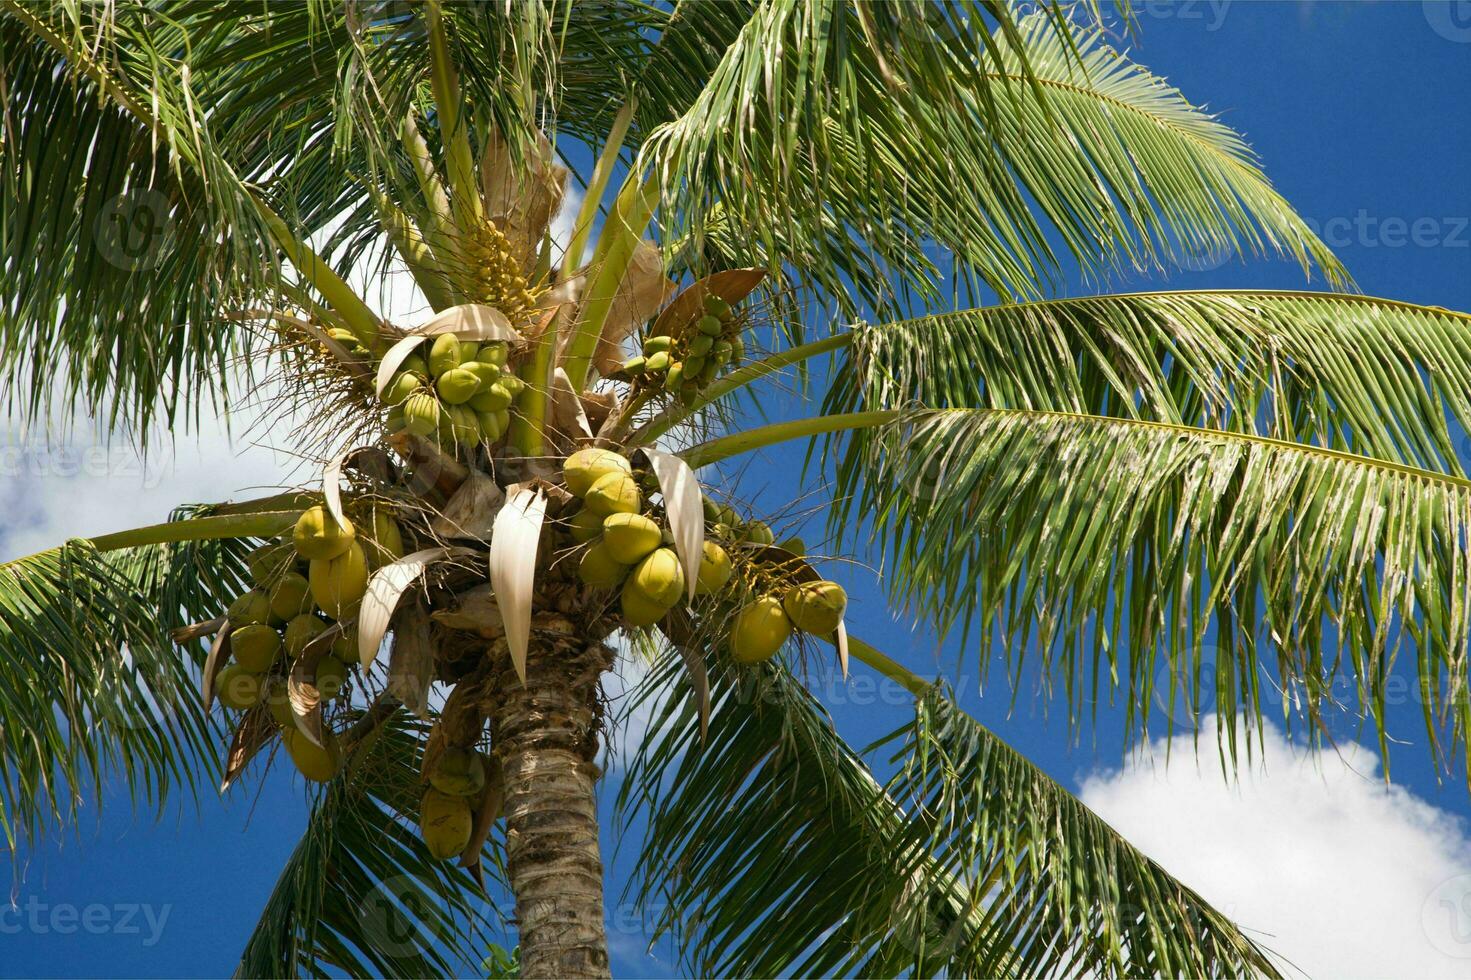 rustig tropisch strand met palm bomen en blauw zee. foto